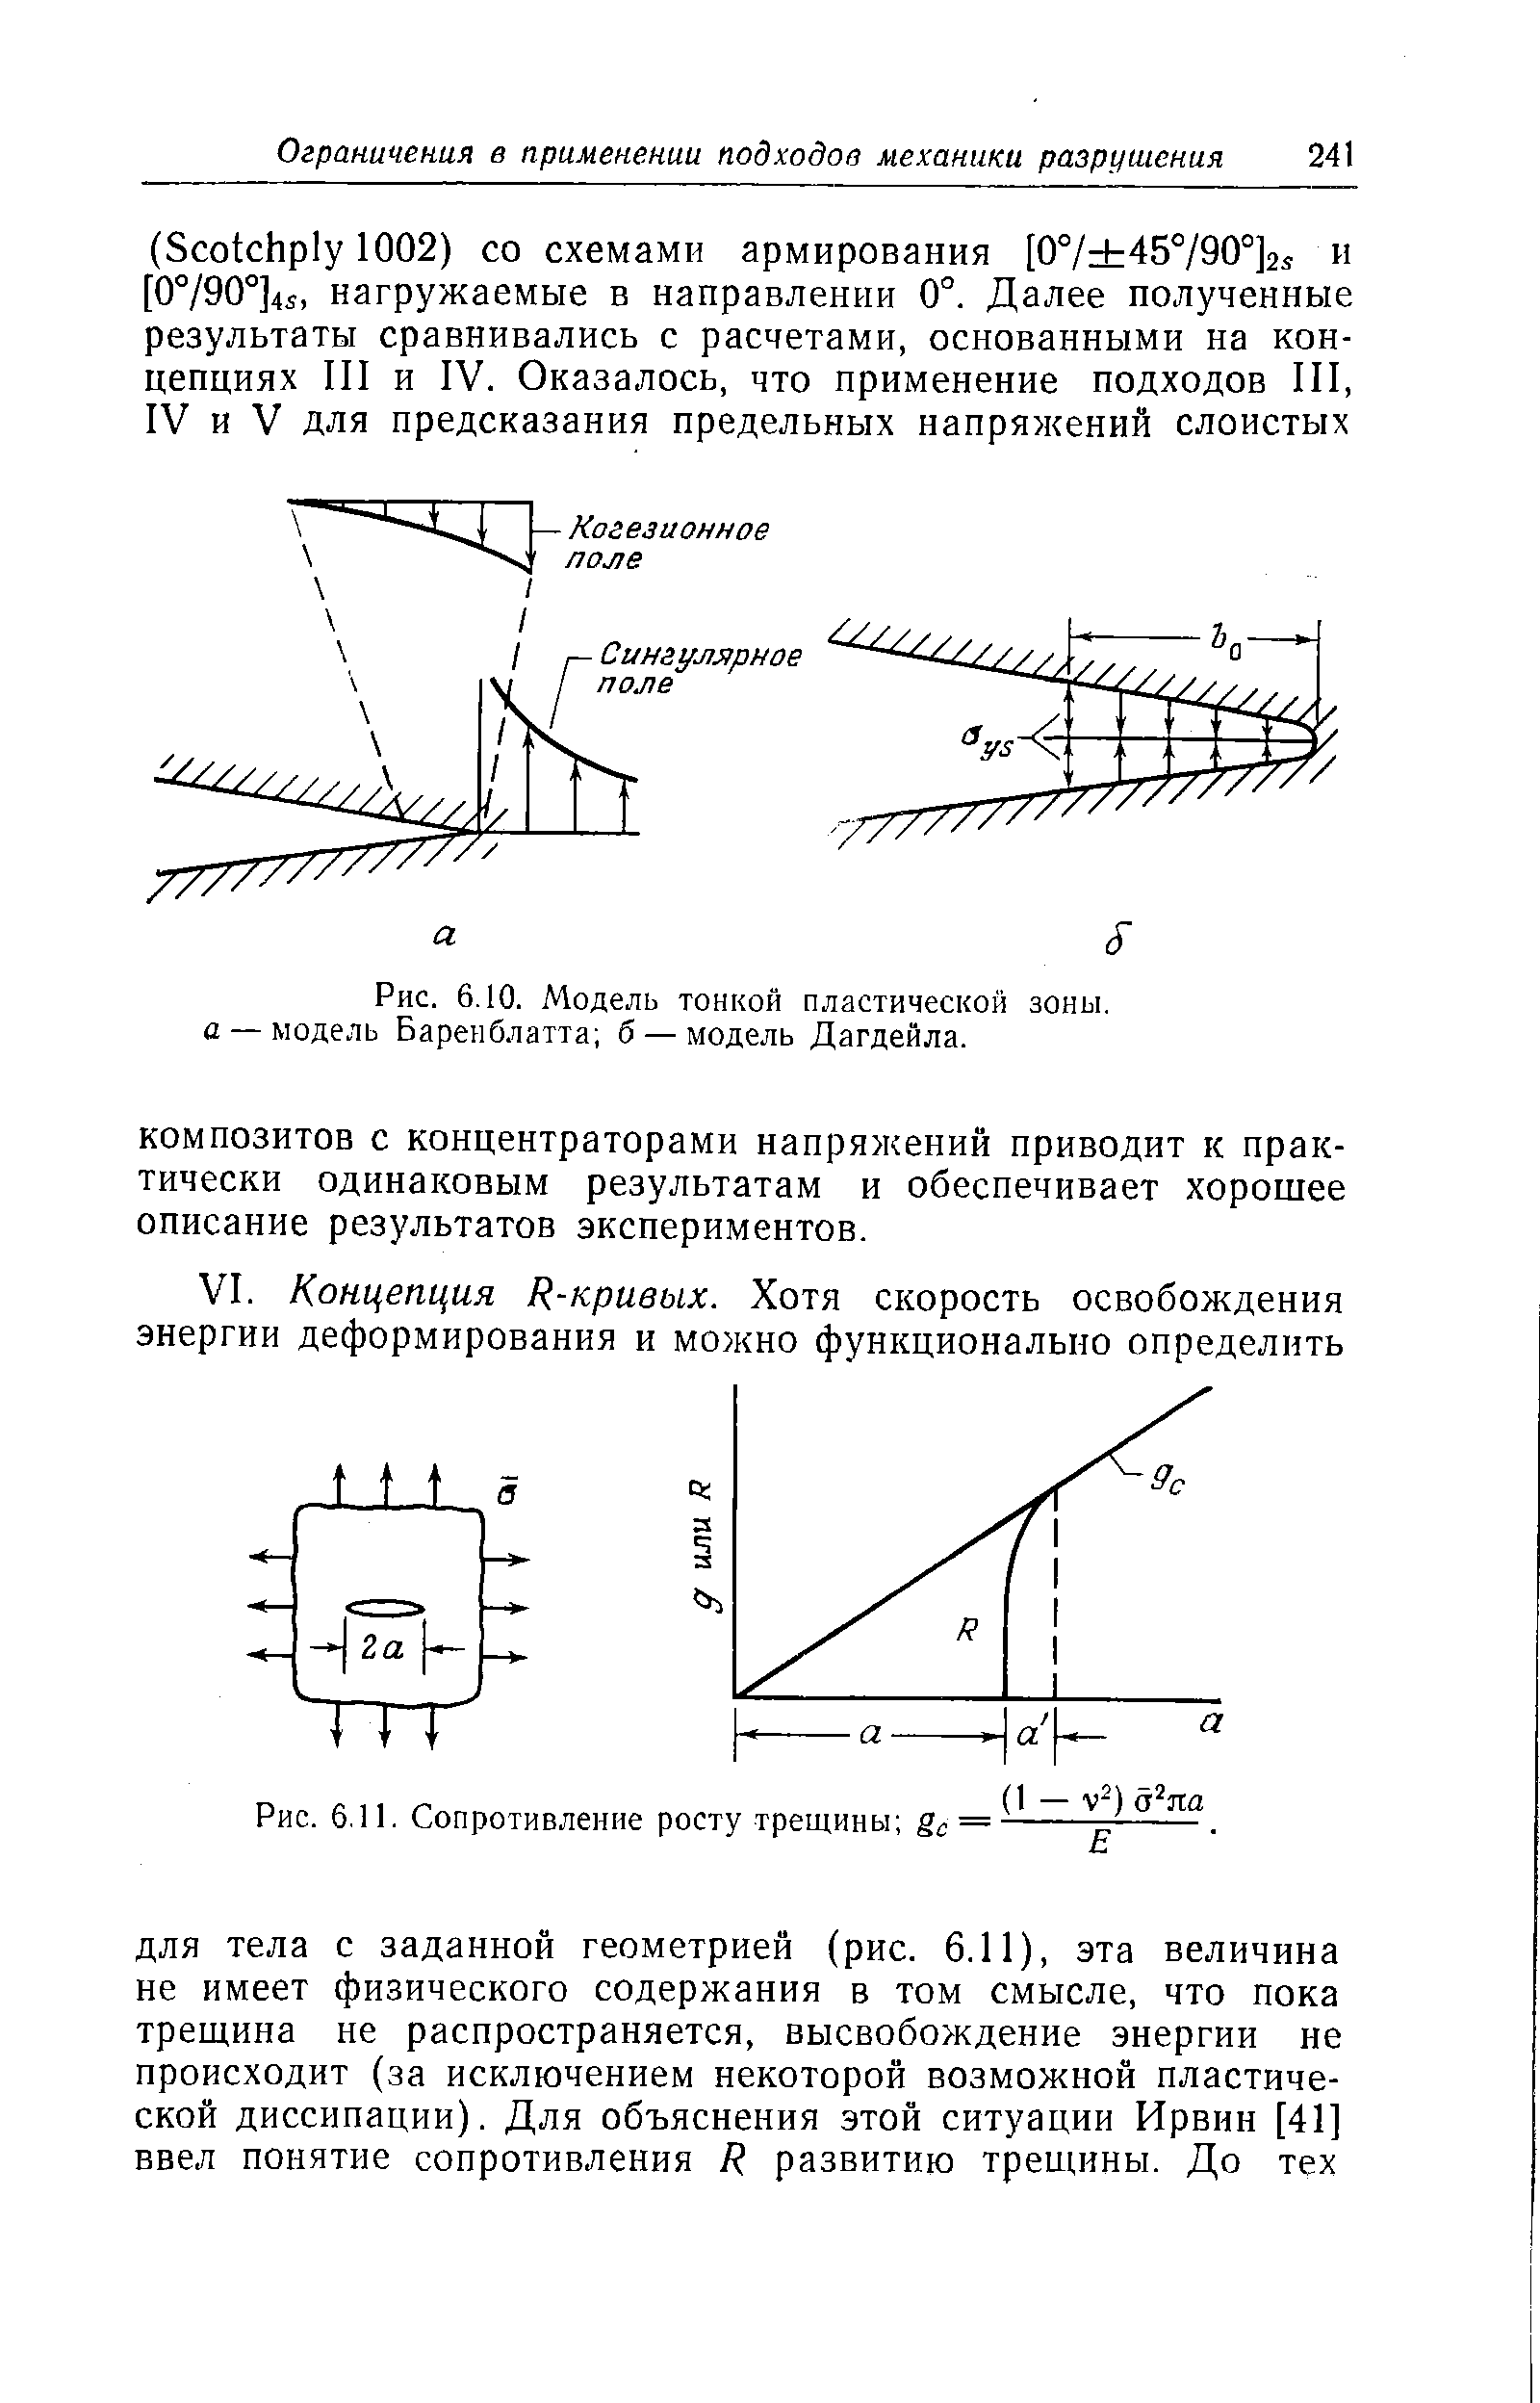 Рис. 6.10. Модель тонкой <a href="/info/195718">пластической зоны</a>. а — модель Баренблатта б — модель Дагдейла.
